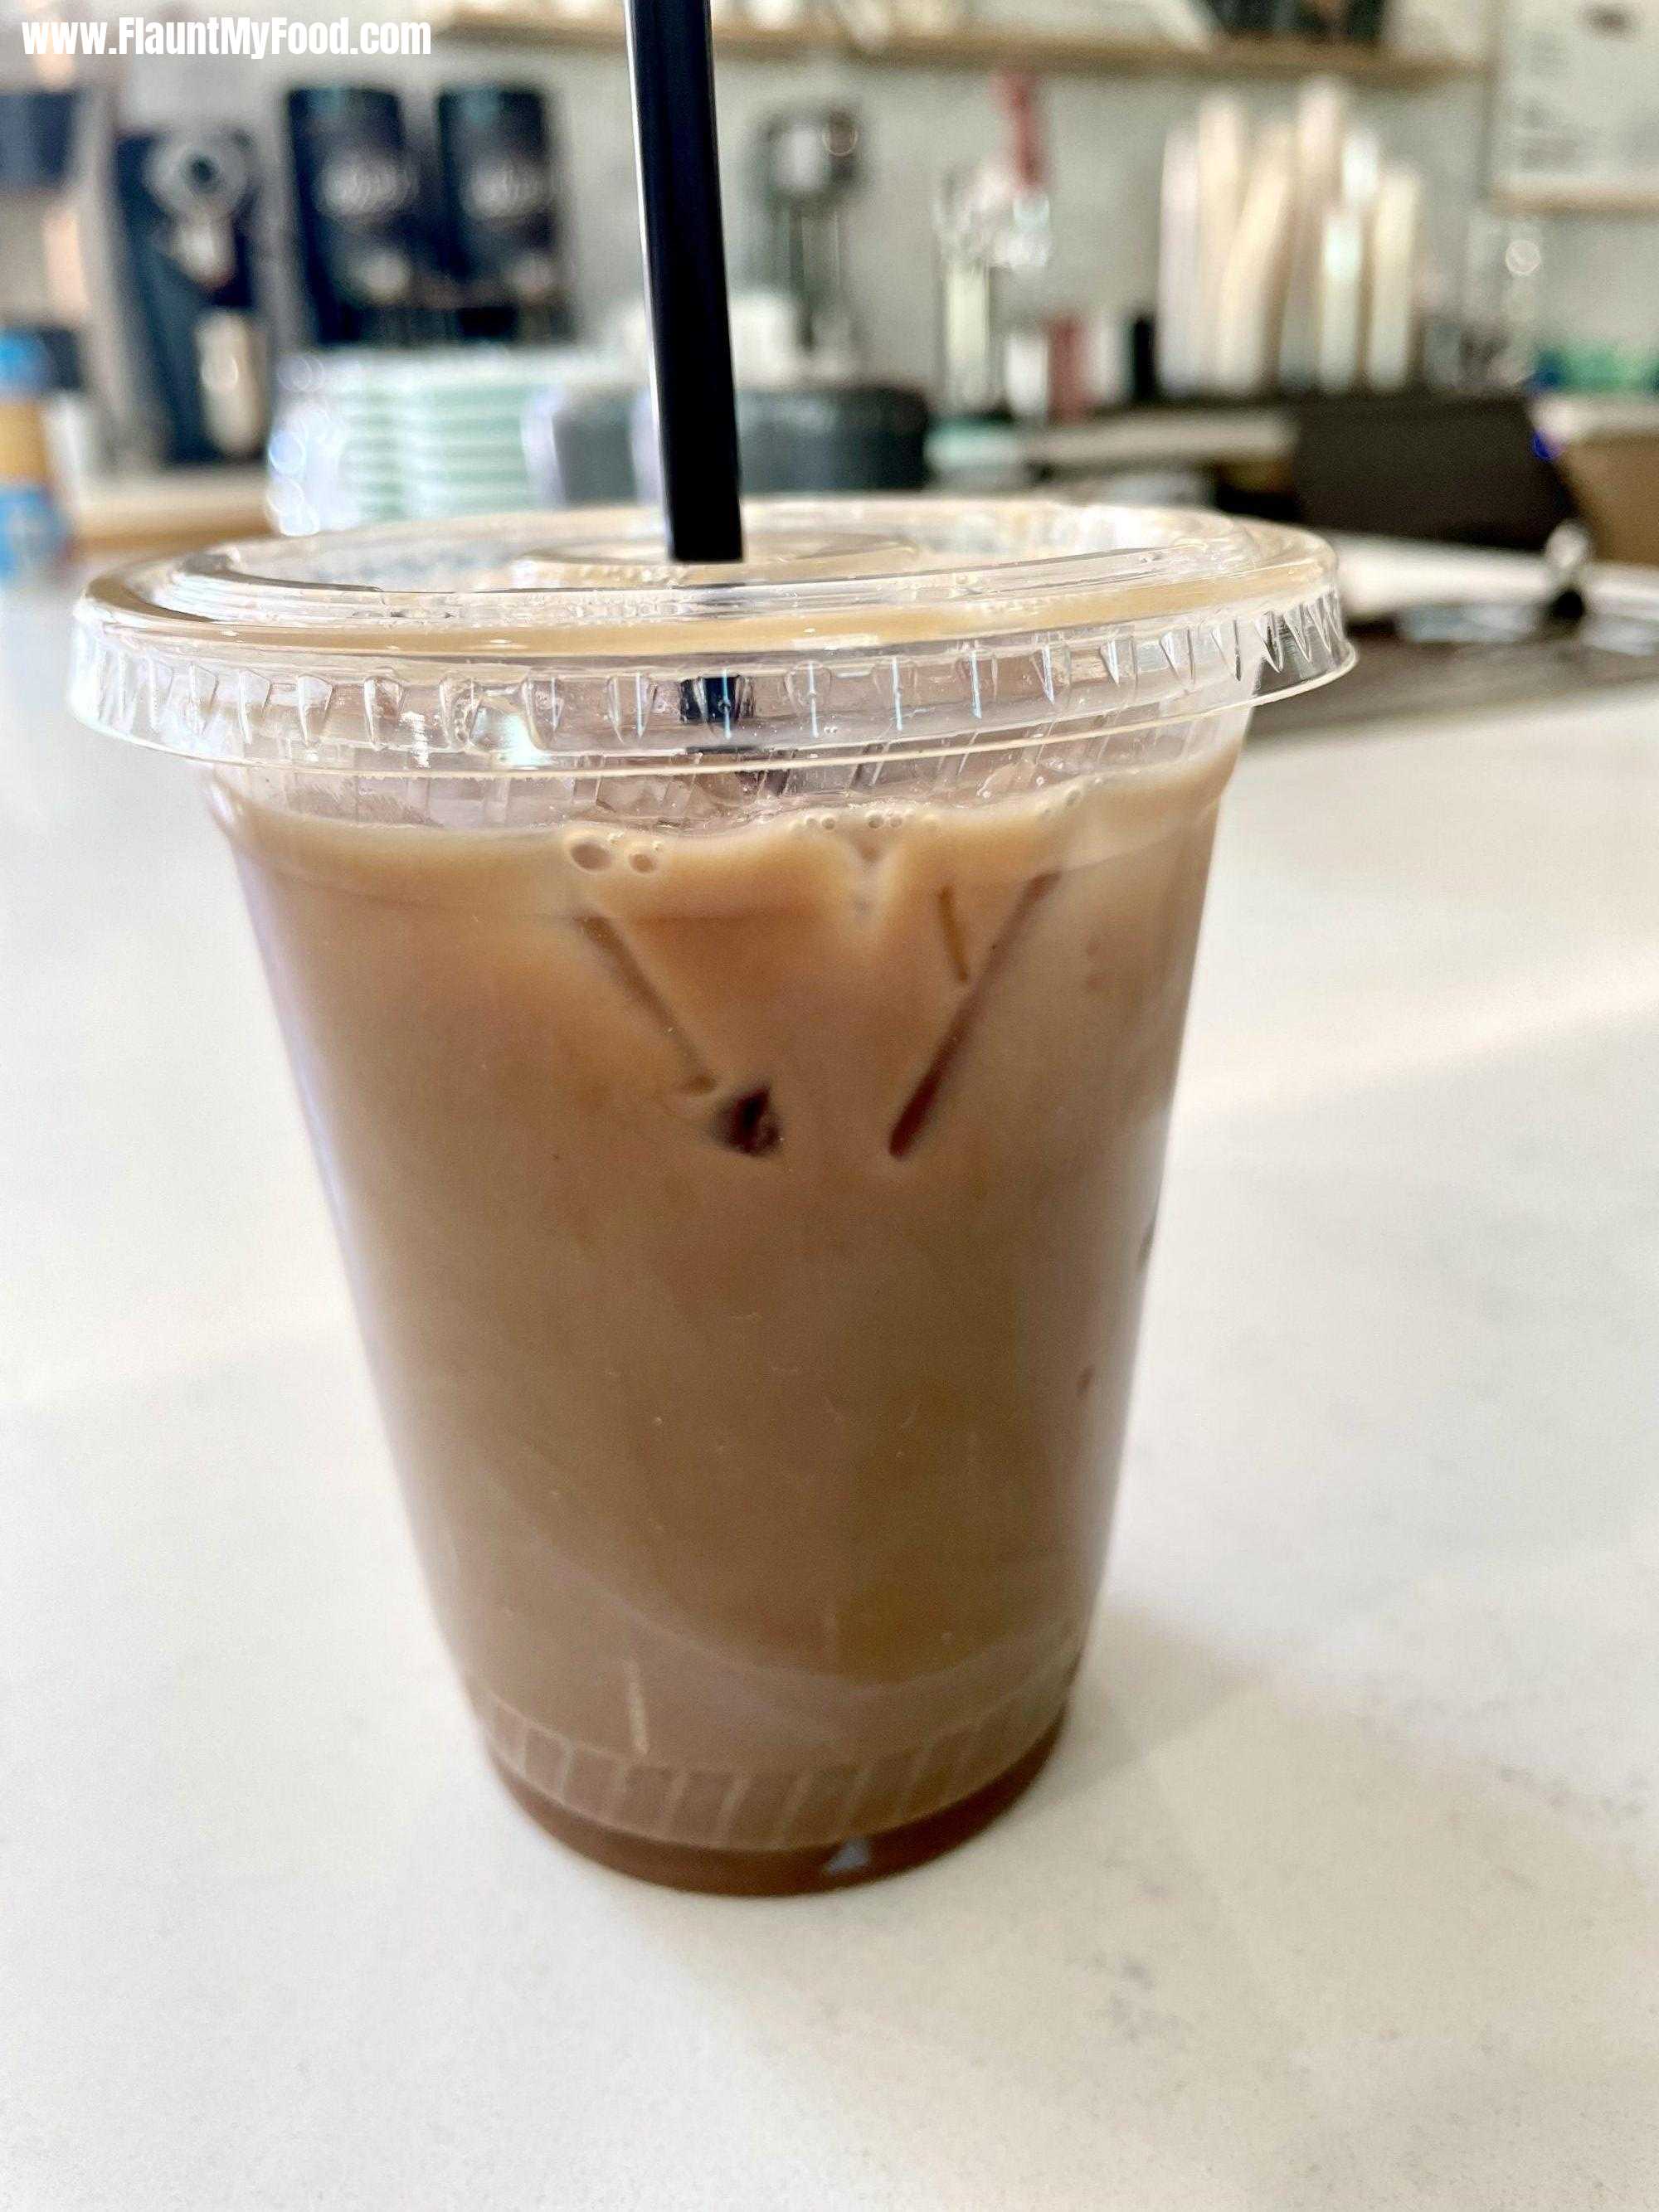 Iced mocha latte at DWELL coffee shop near TCU in Fort Worth Texas